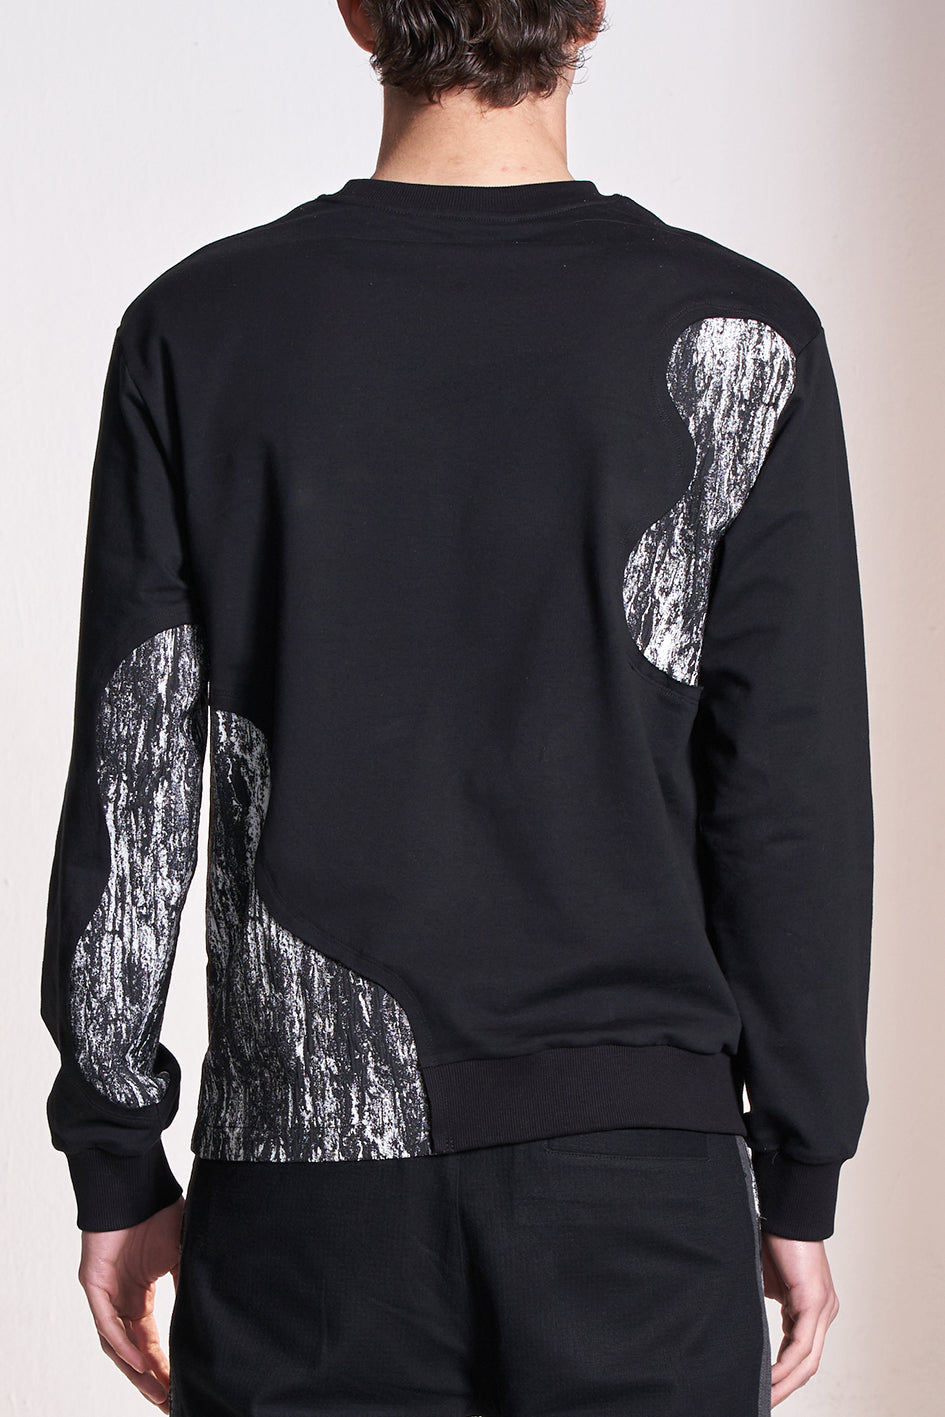 Texture Fabric Contrast Sweatshirt